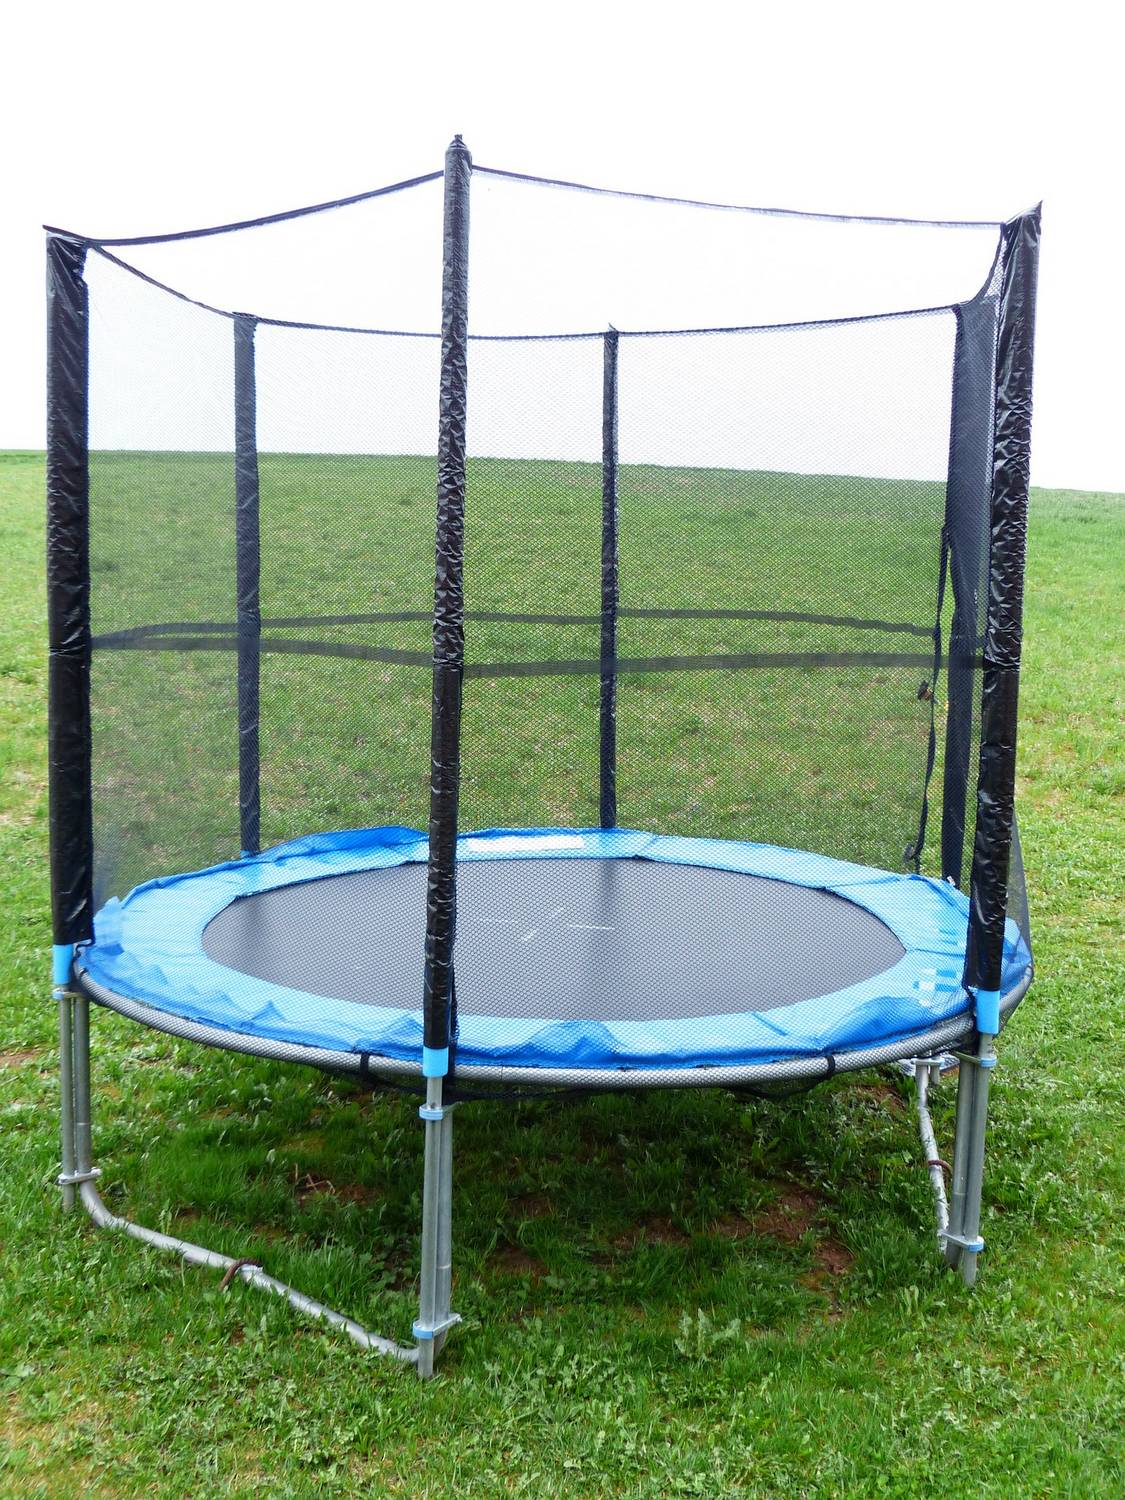 Jak zamontować siatkę do trampoliny?